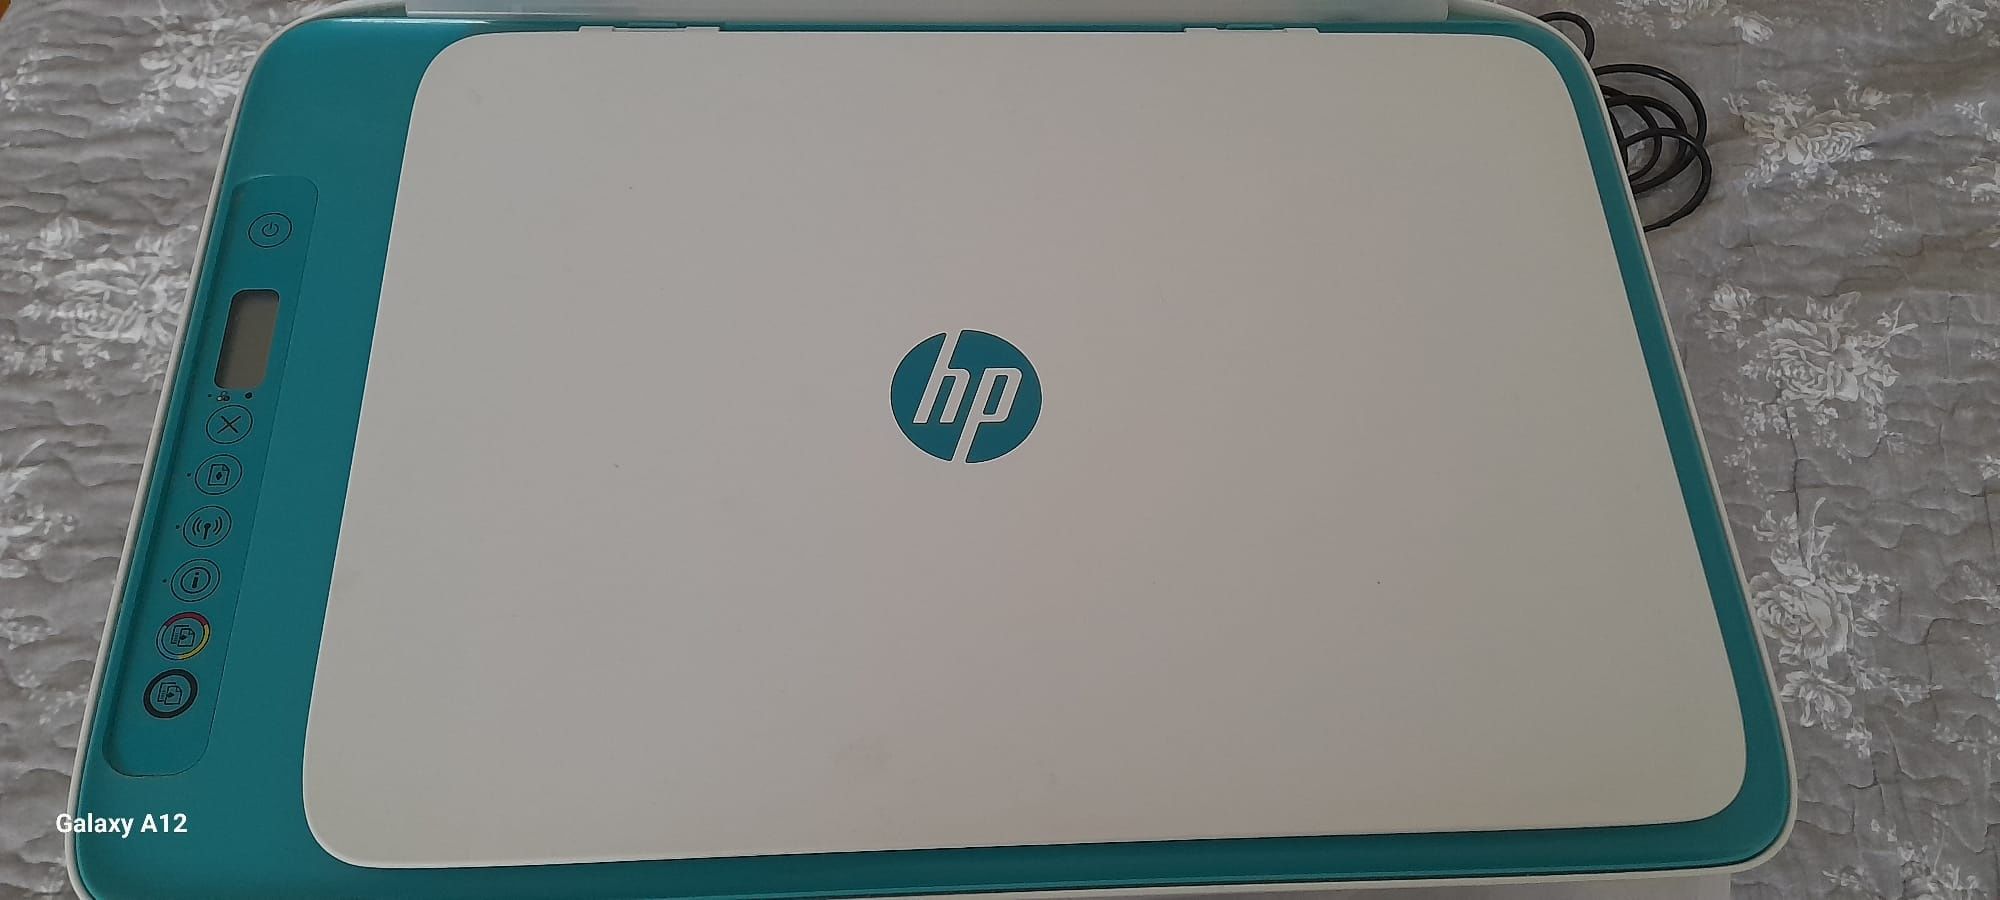 Imprimanta HP cu cartus